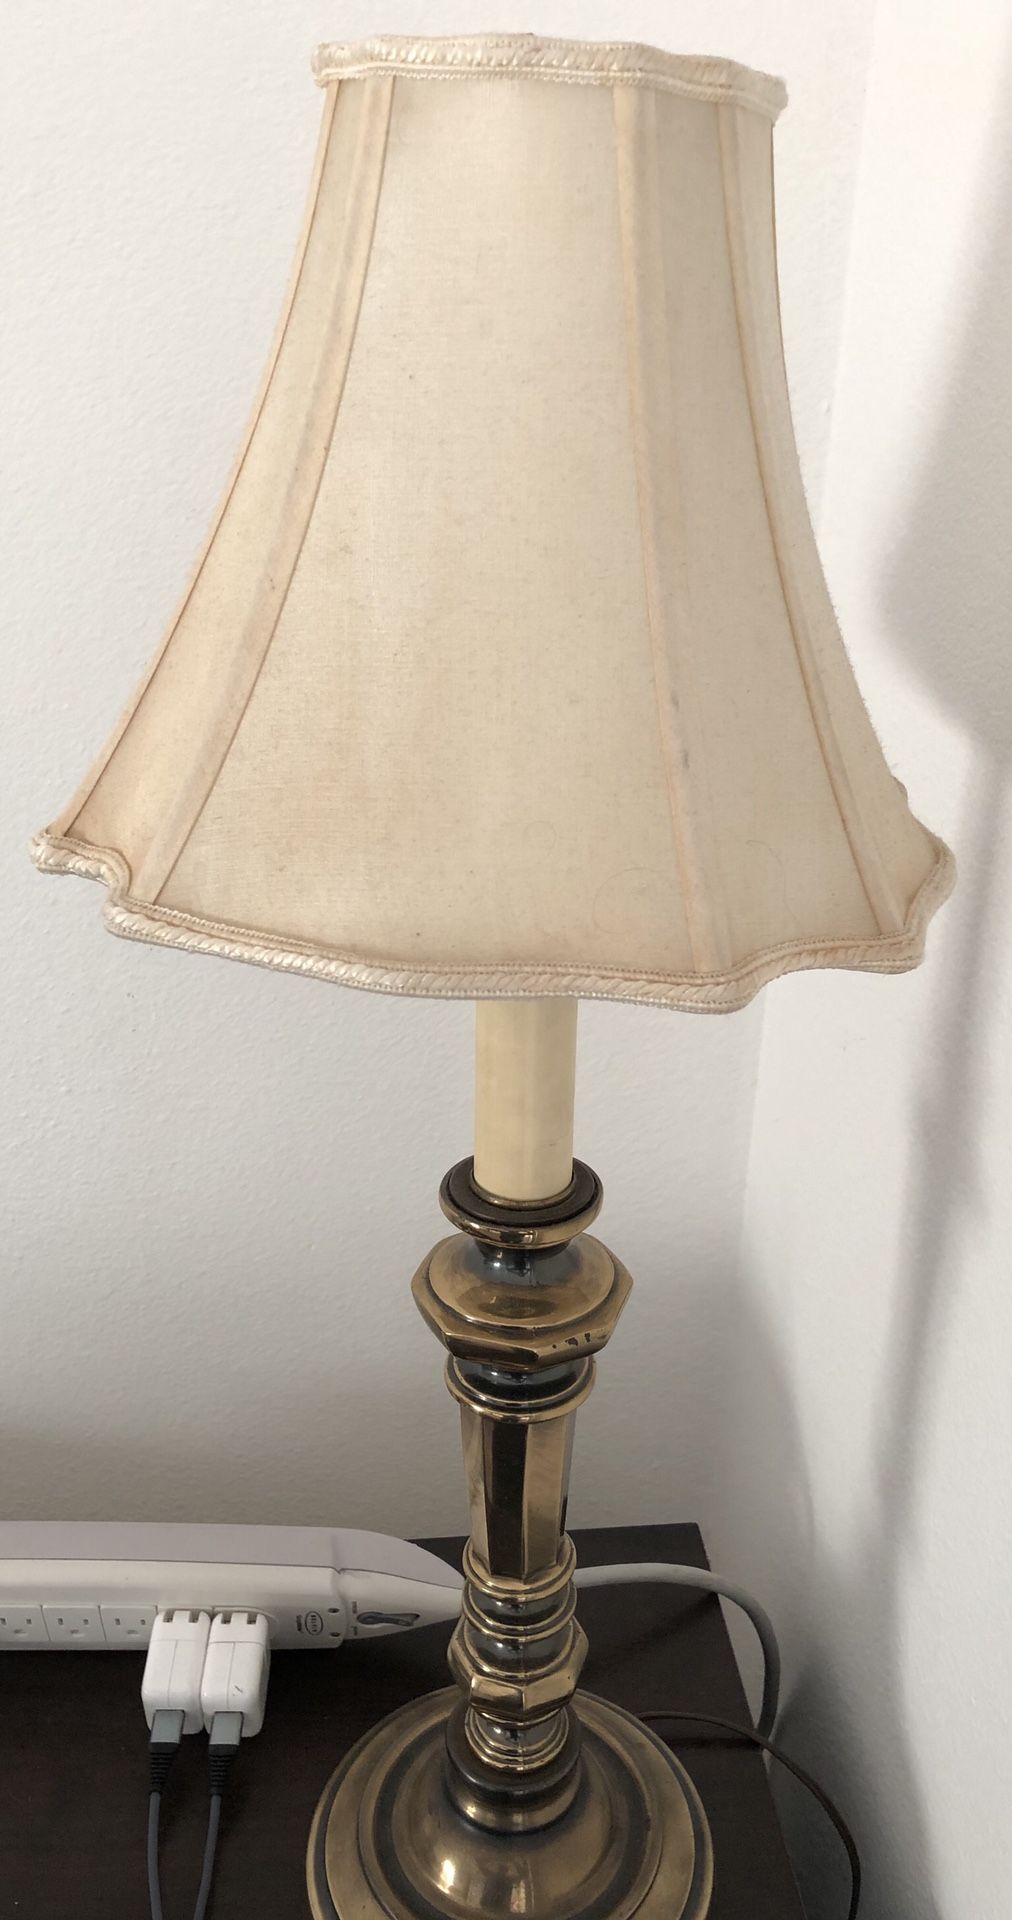 Brass table lamp - $10 obo